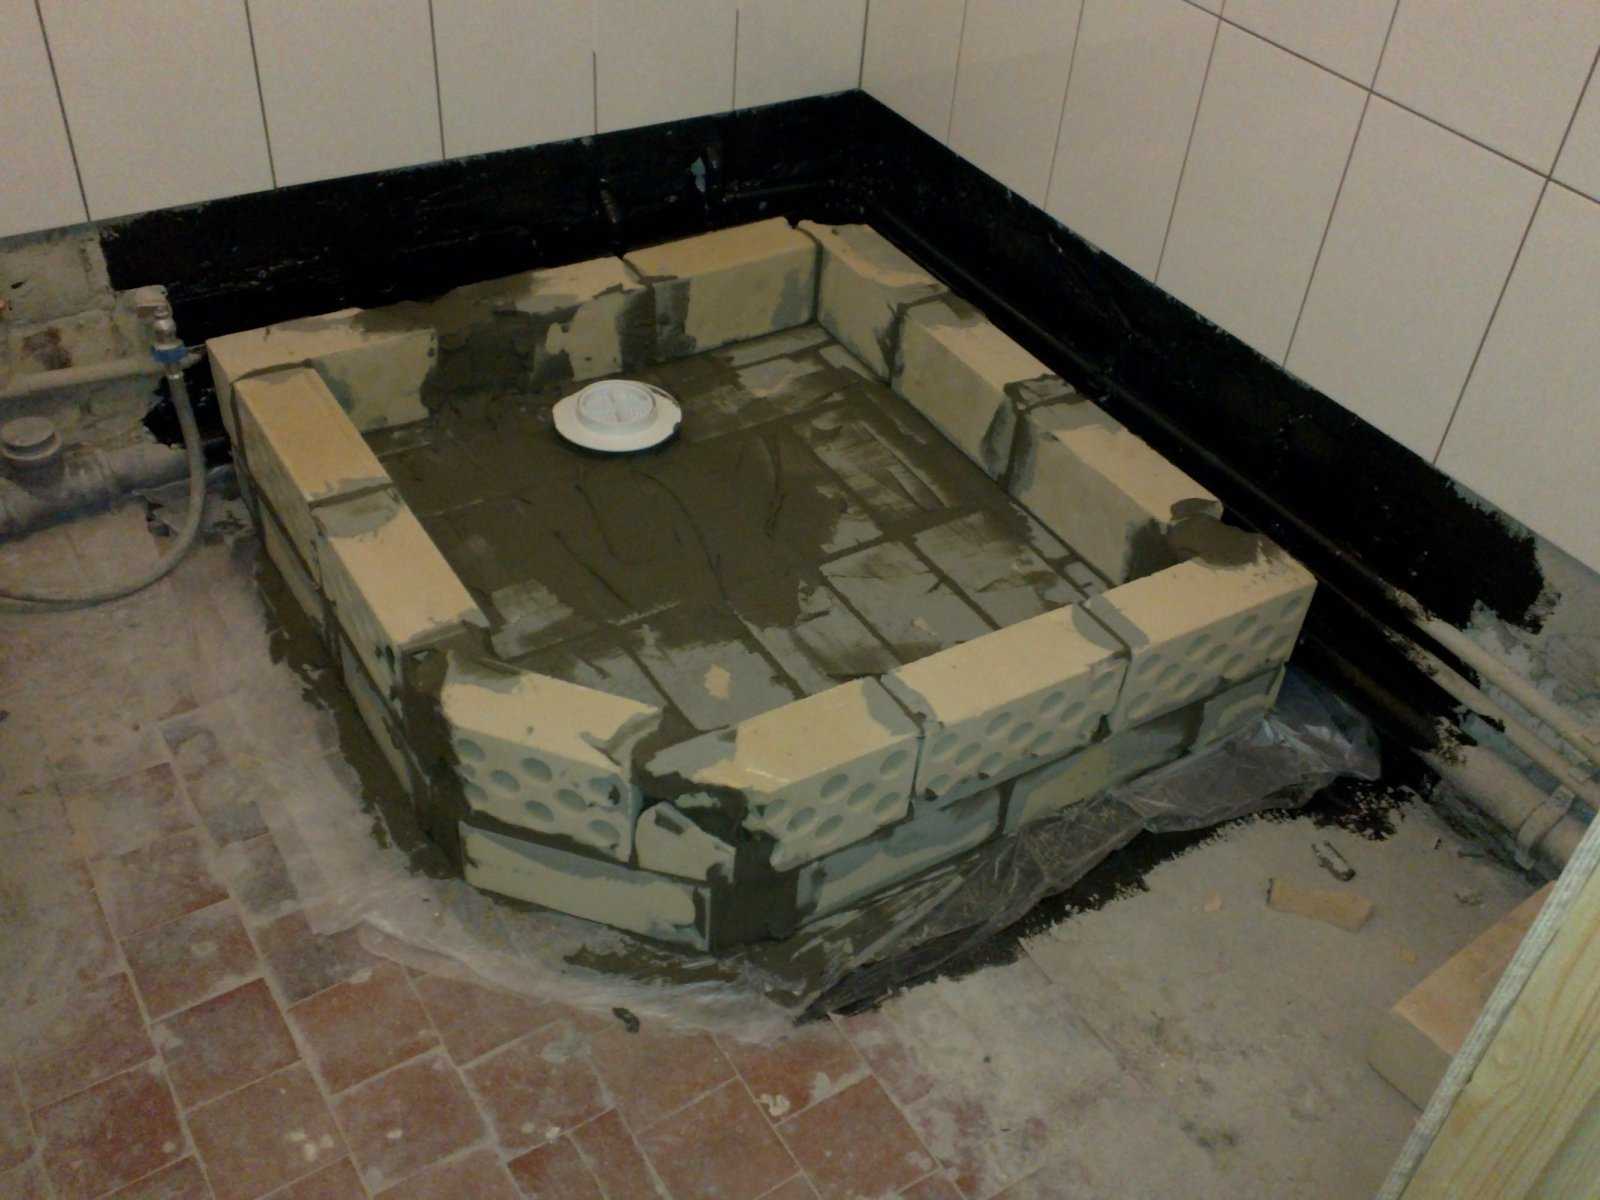 Встроенная душевая кабина из кафеля в ванной комнате: размеры, фото ванны, как сделать встраиваемый душ без поддона своими руками